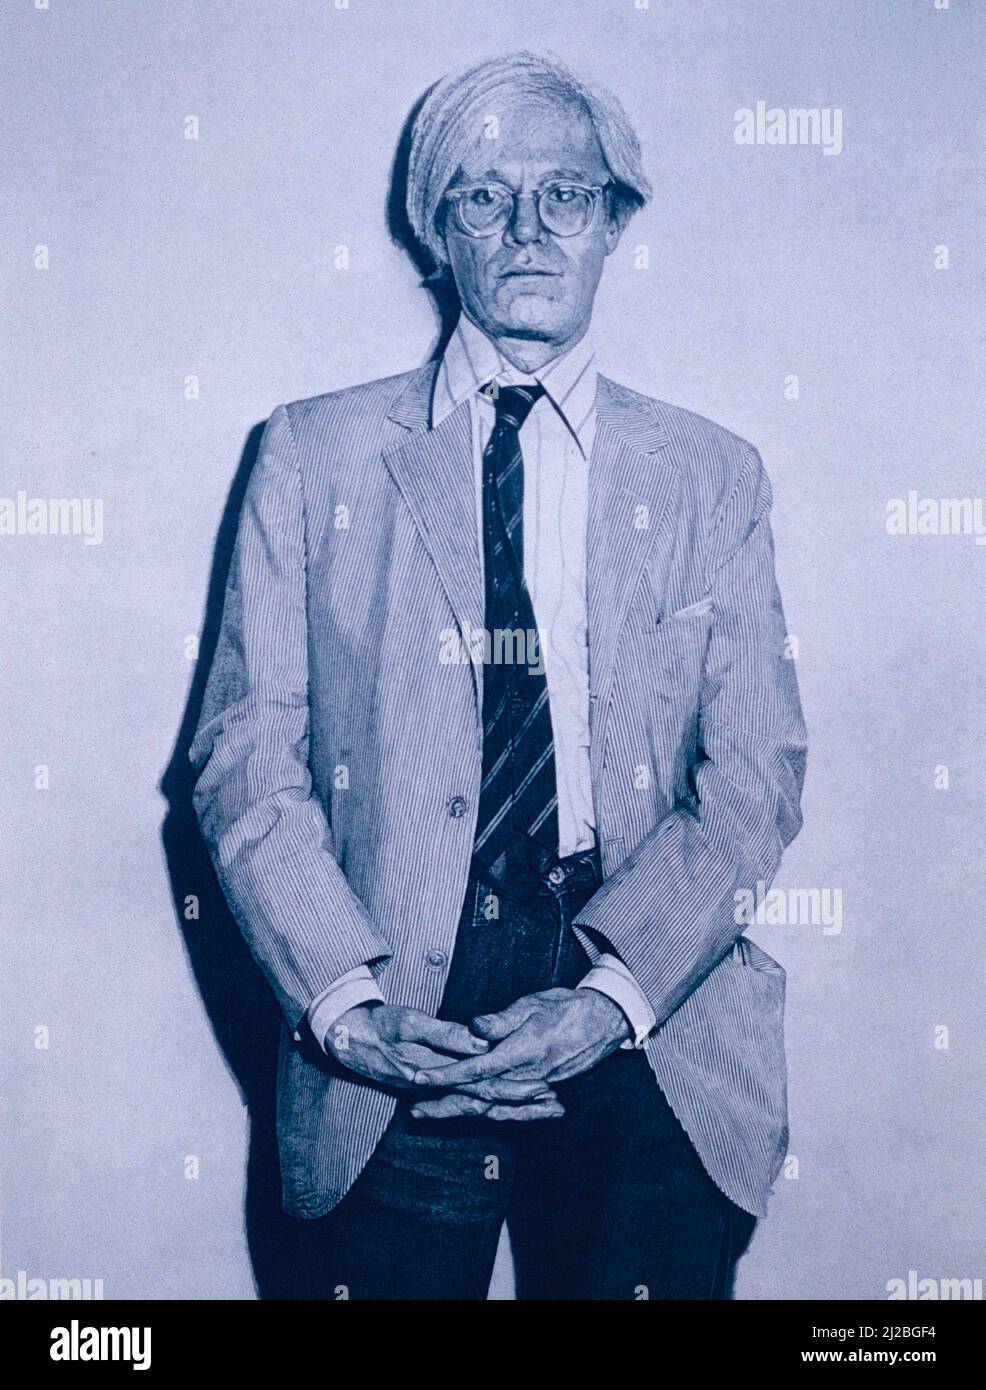 Portrait d'Andy Warhol, oeuvre de l'artiste français Jean-Olivier Hucleux, 1990s Banque D'Images